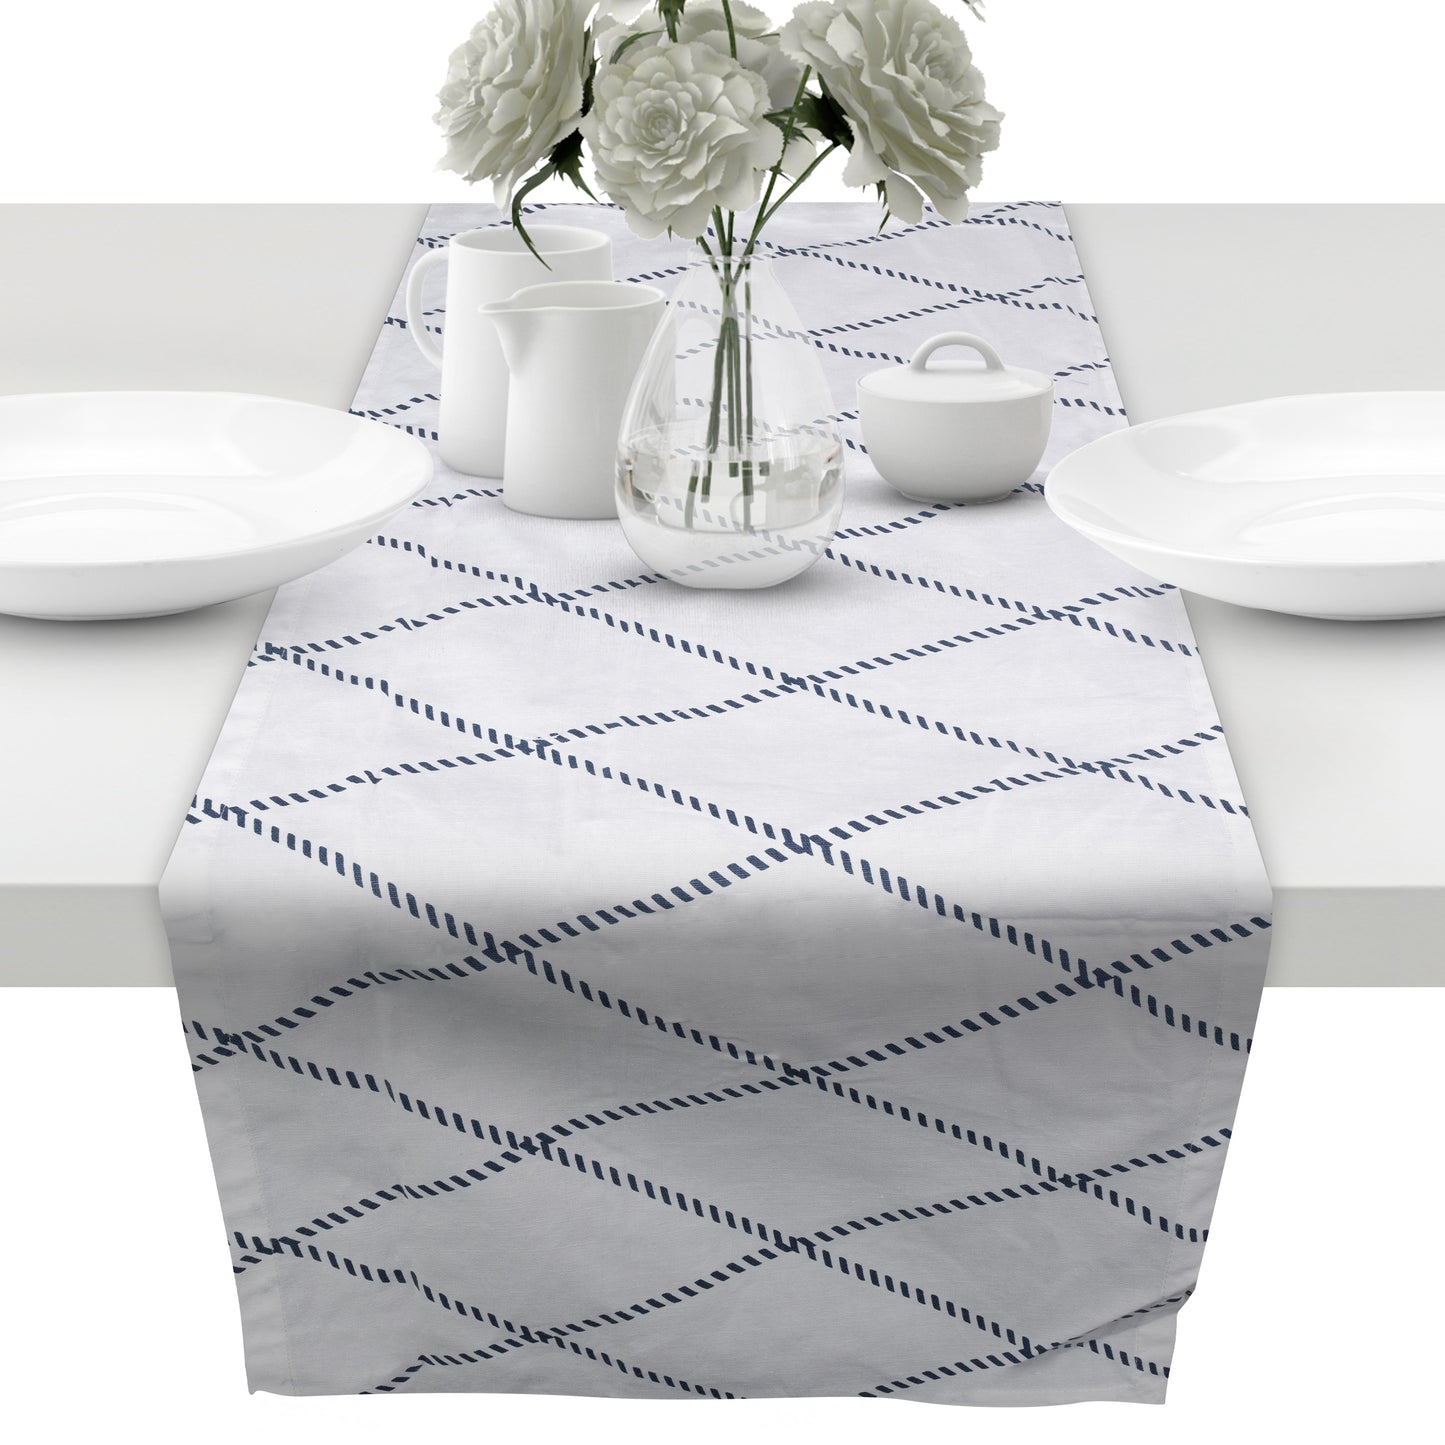 Tischläufer aus 100% Baumwolle in Bester Qualität, Tischdecke für Esstisch Wohnzimmer (weißblau Raute, 43 x 160 cm)